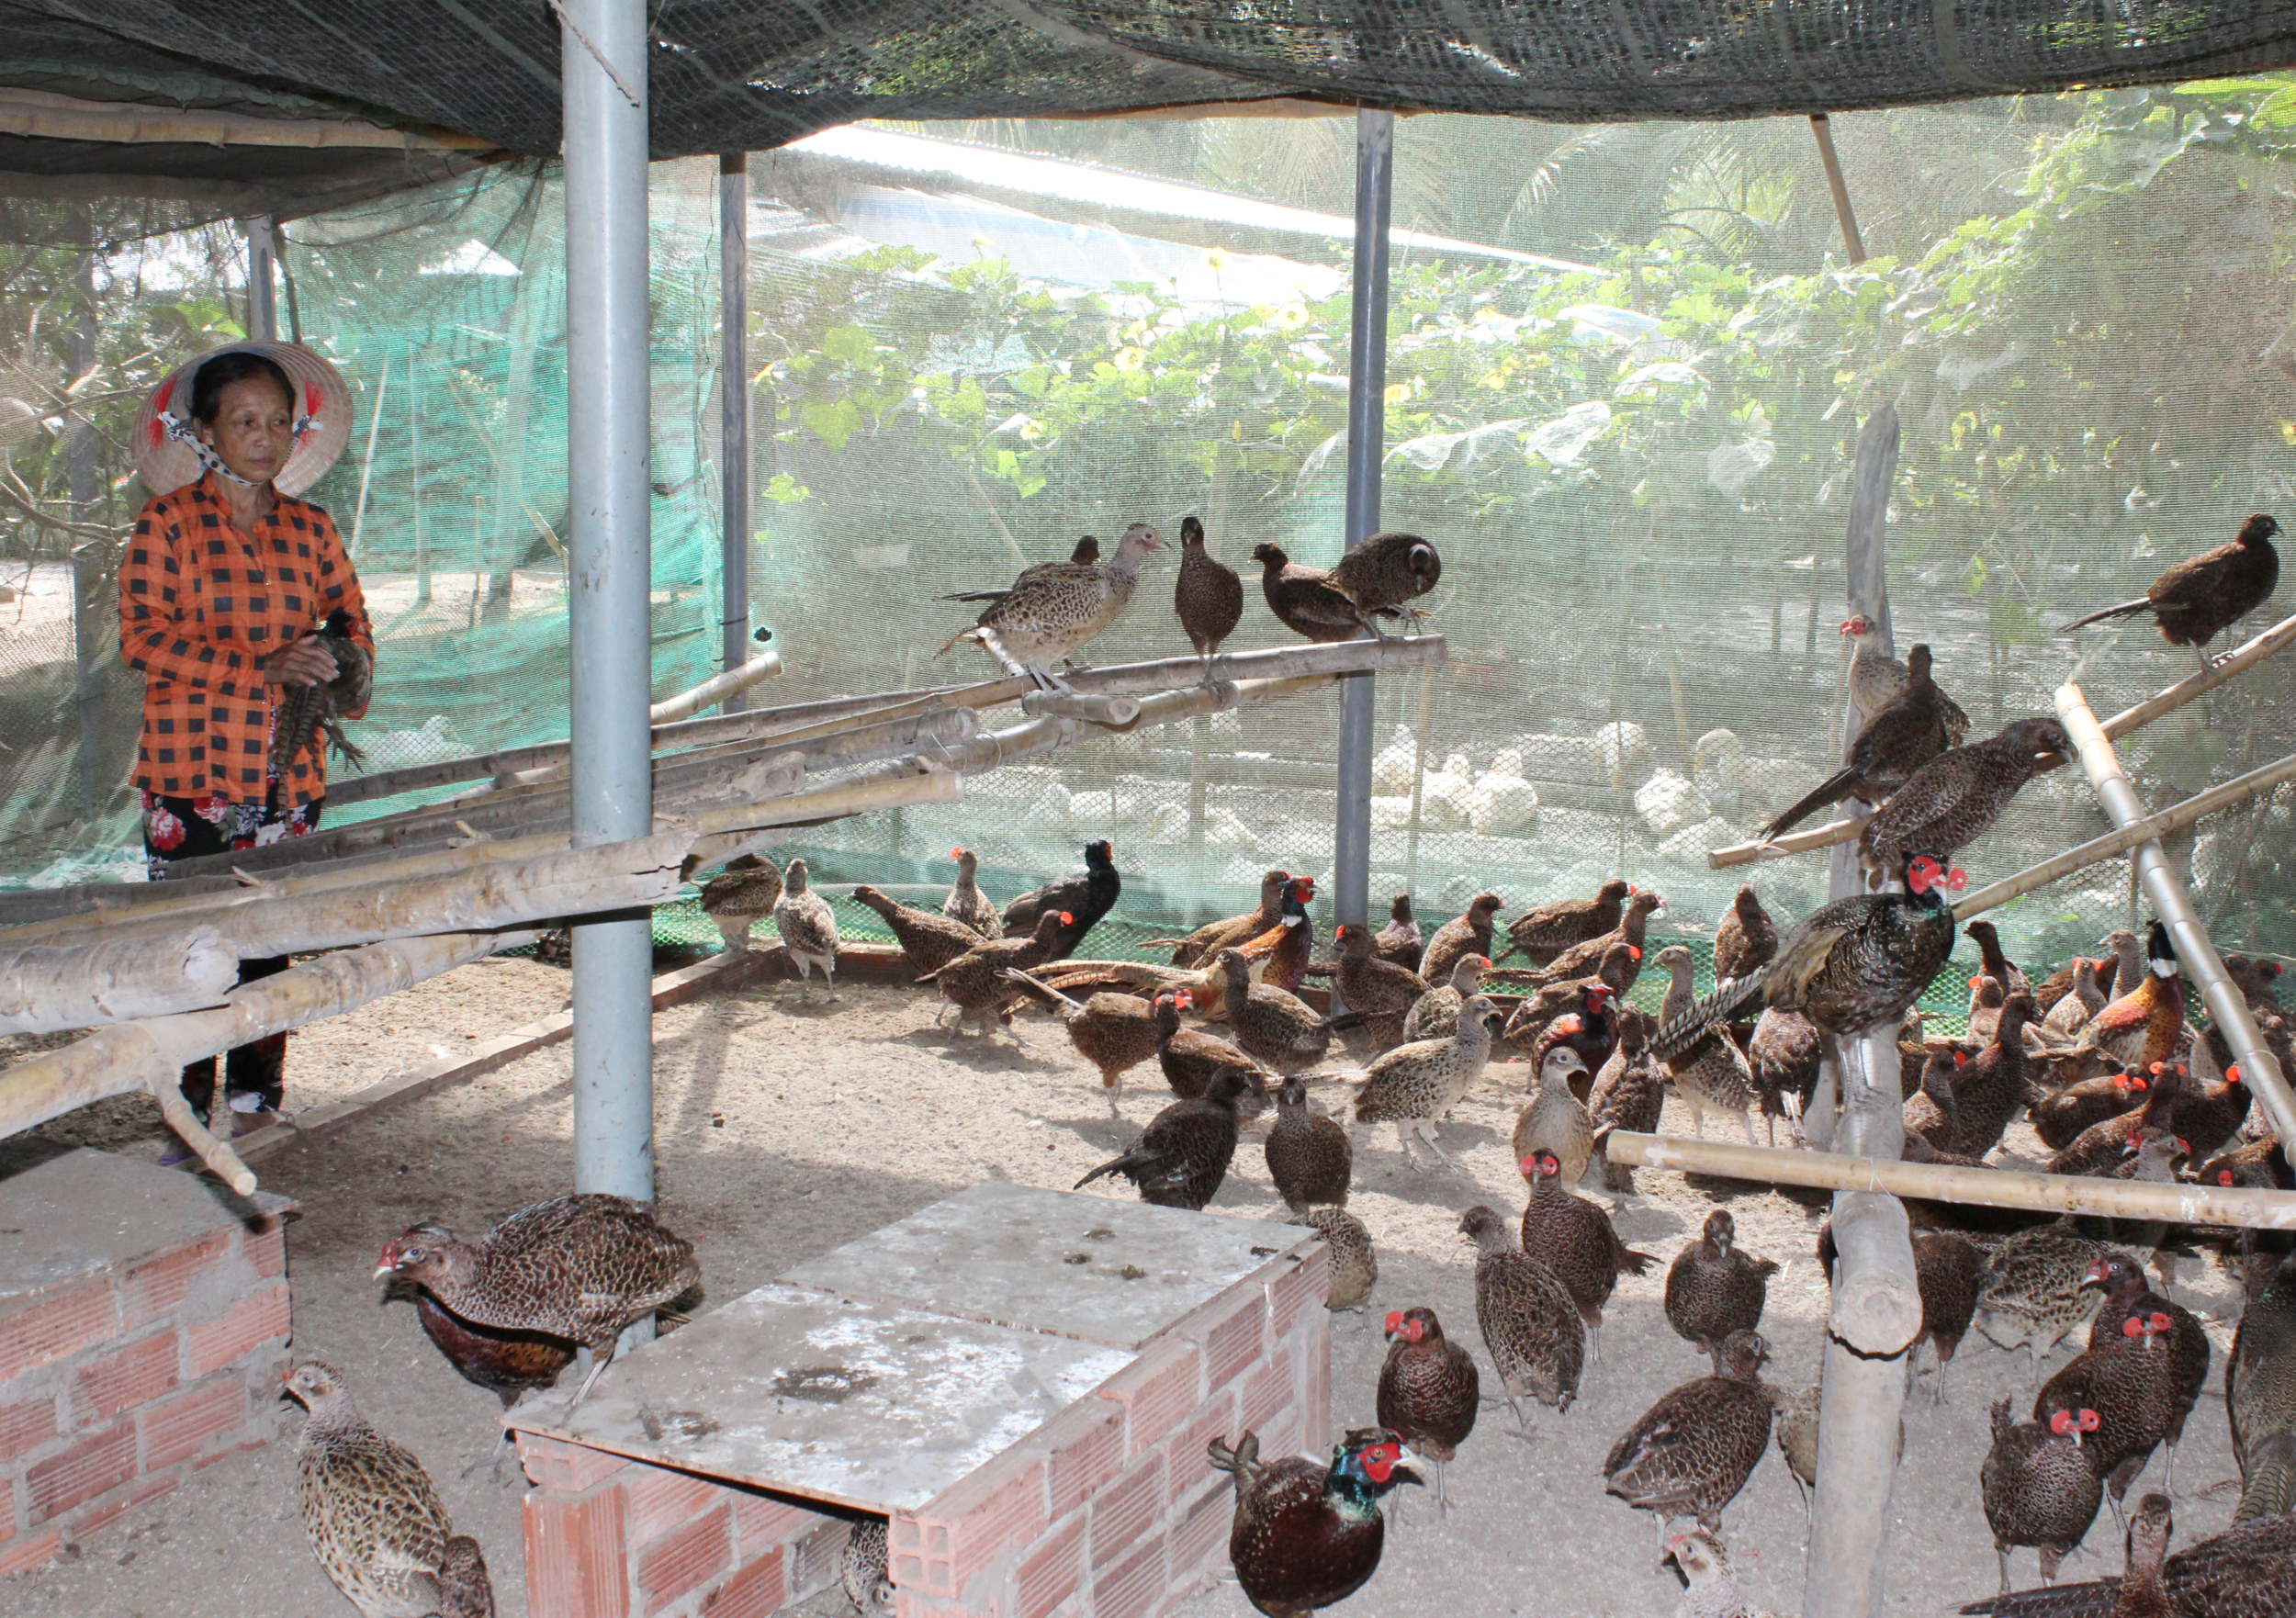 Chim trĩ Vân Nam-Reeves Pheasant – Vườn chim việt